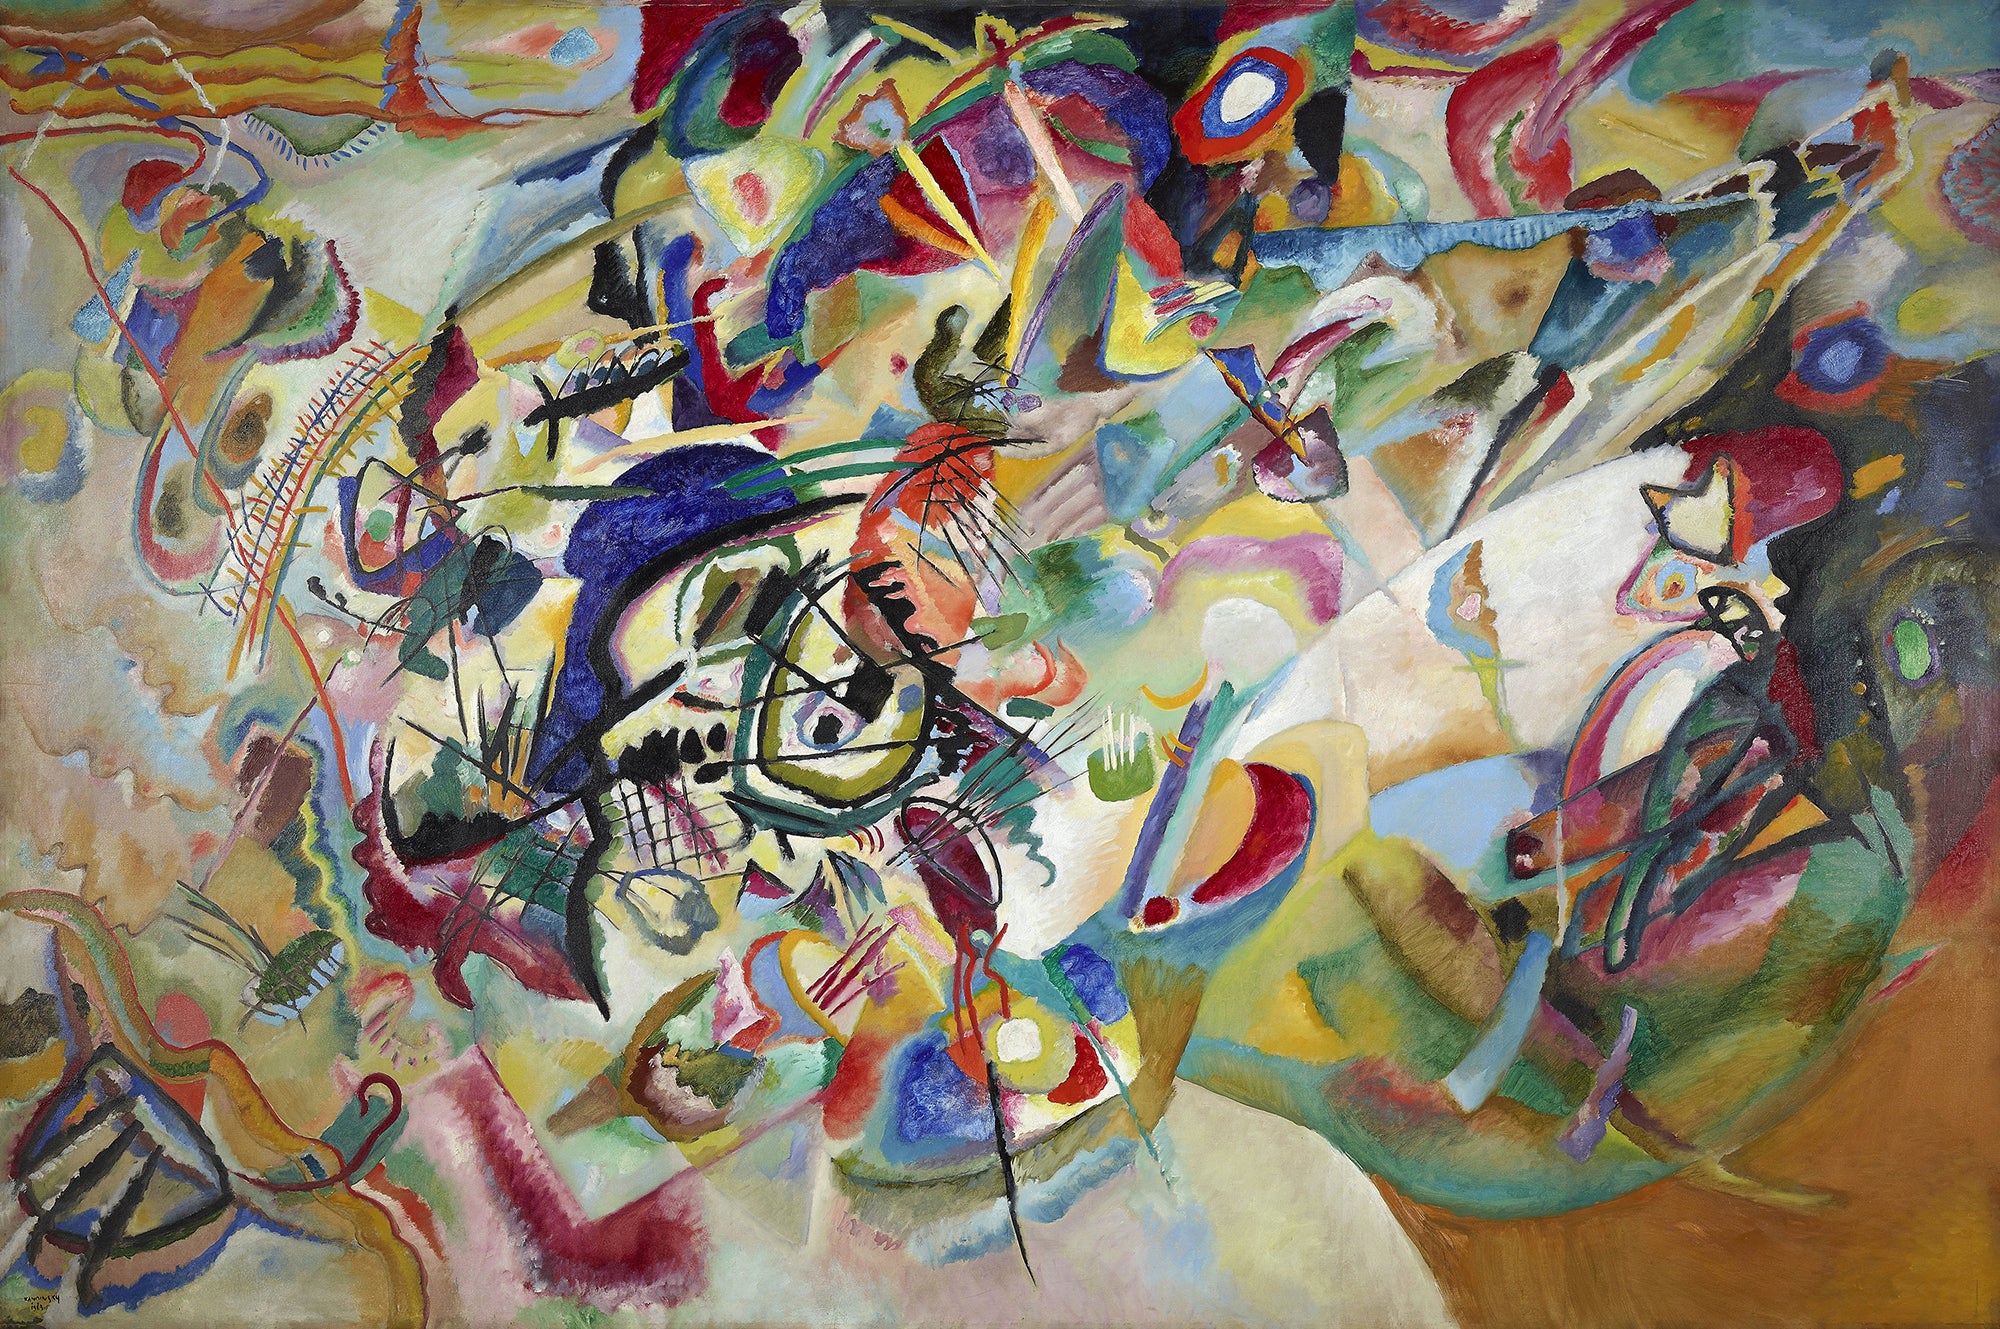 La belleza en la abstracción: Analizando la obra maestra de Wassily Kandinsky, Composición VII